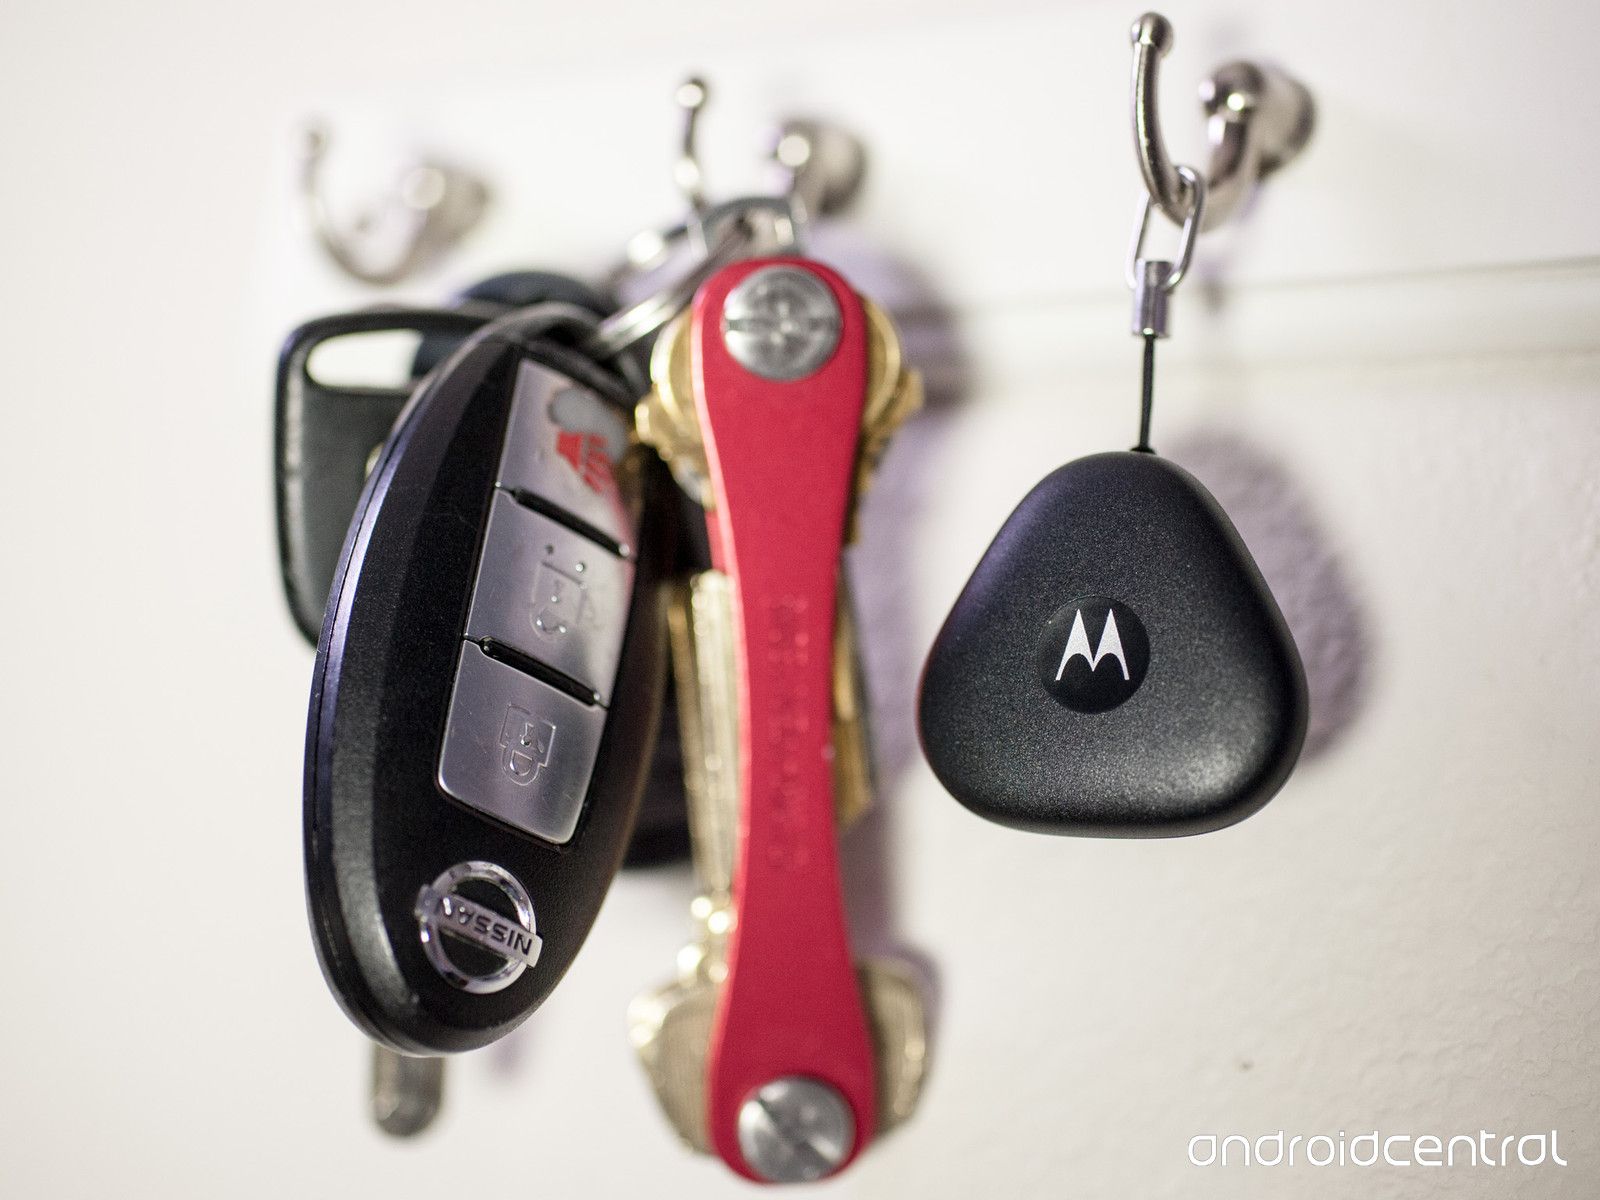 ถ้าไม่รู้ว่าไปลืมของไว้ตรงไหน ลองให้ Motorola Keylink ช่วยหาไหมคะ